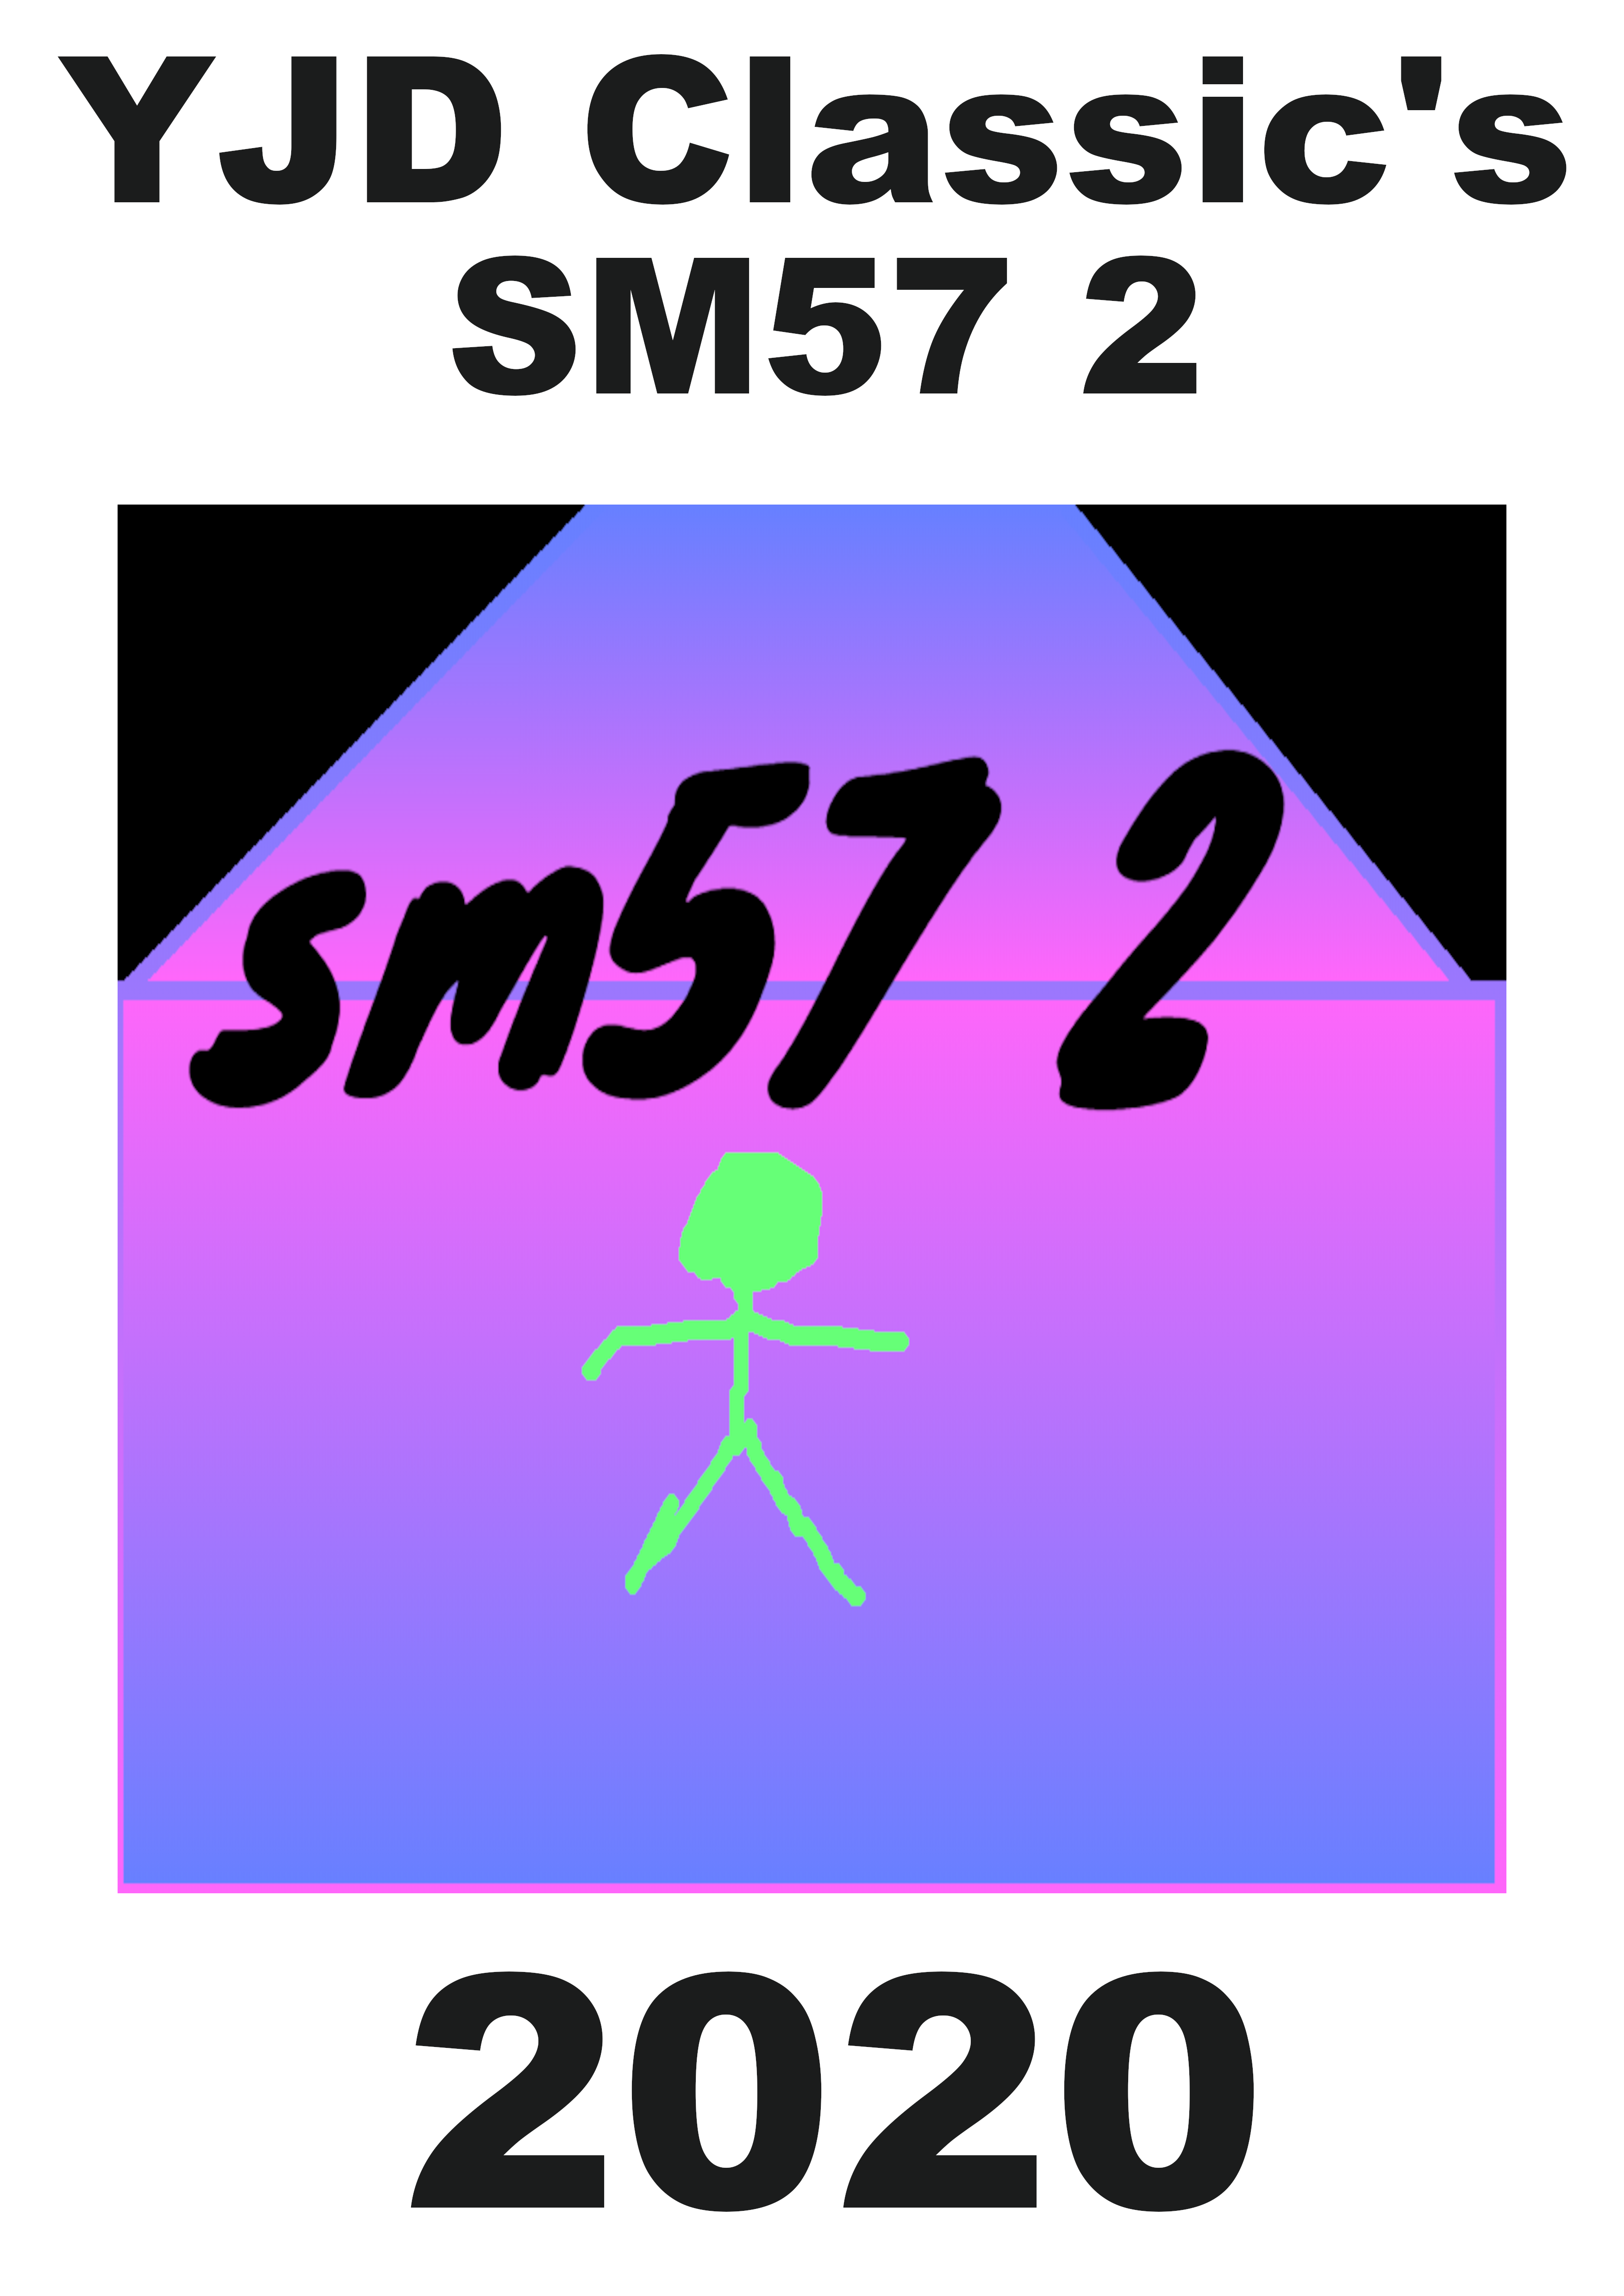 SM57 2